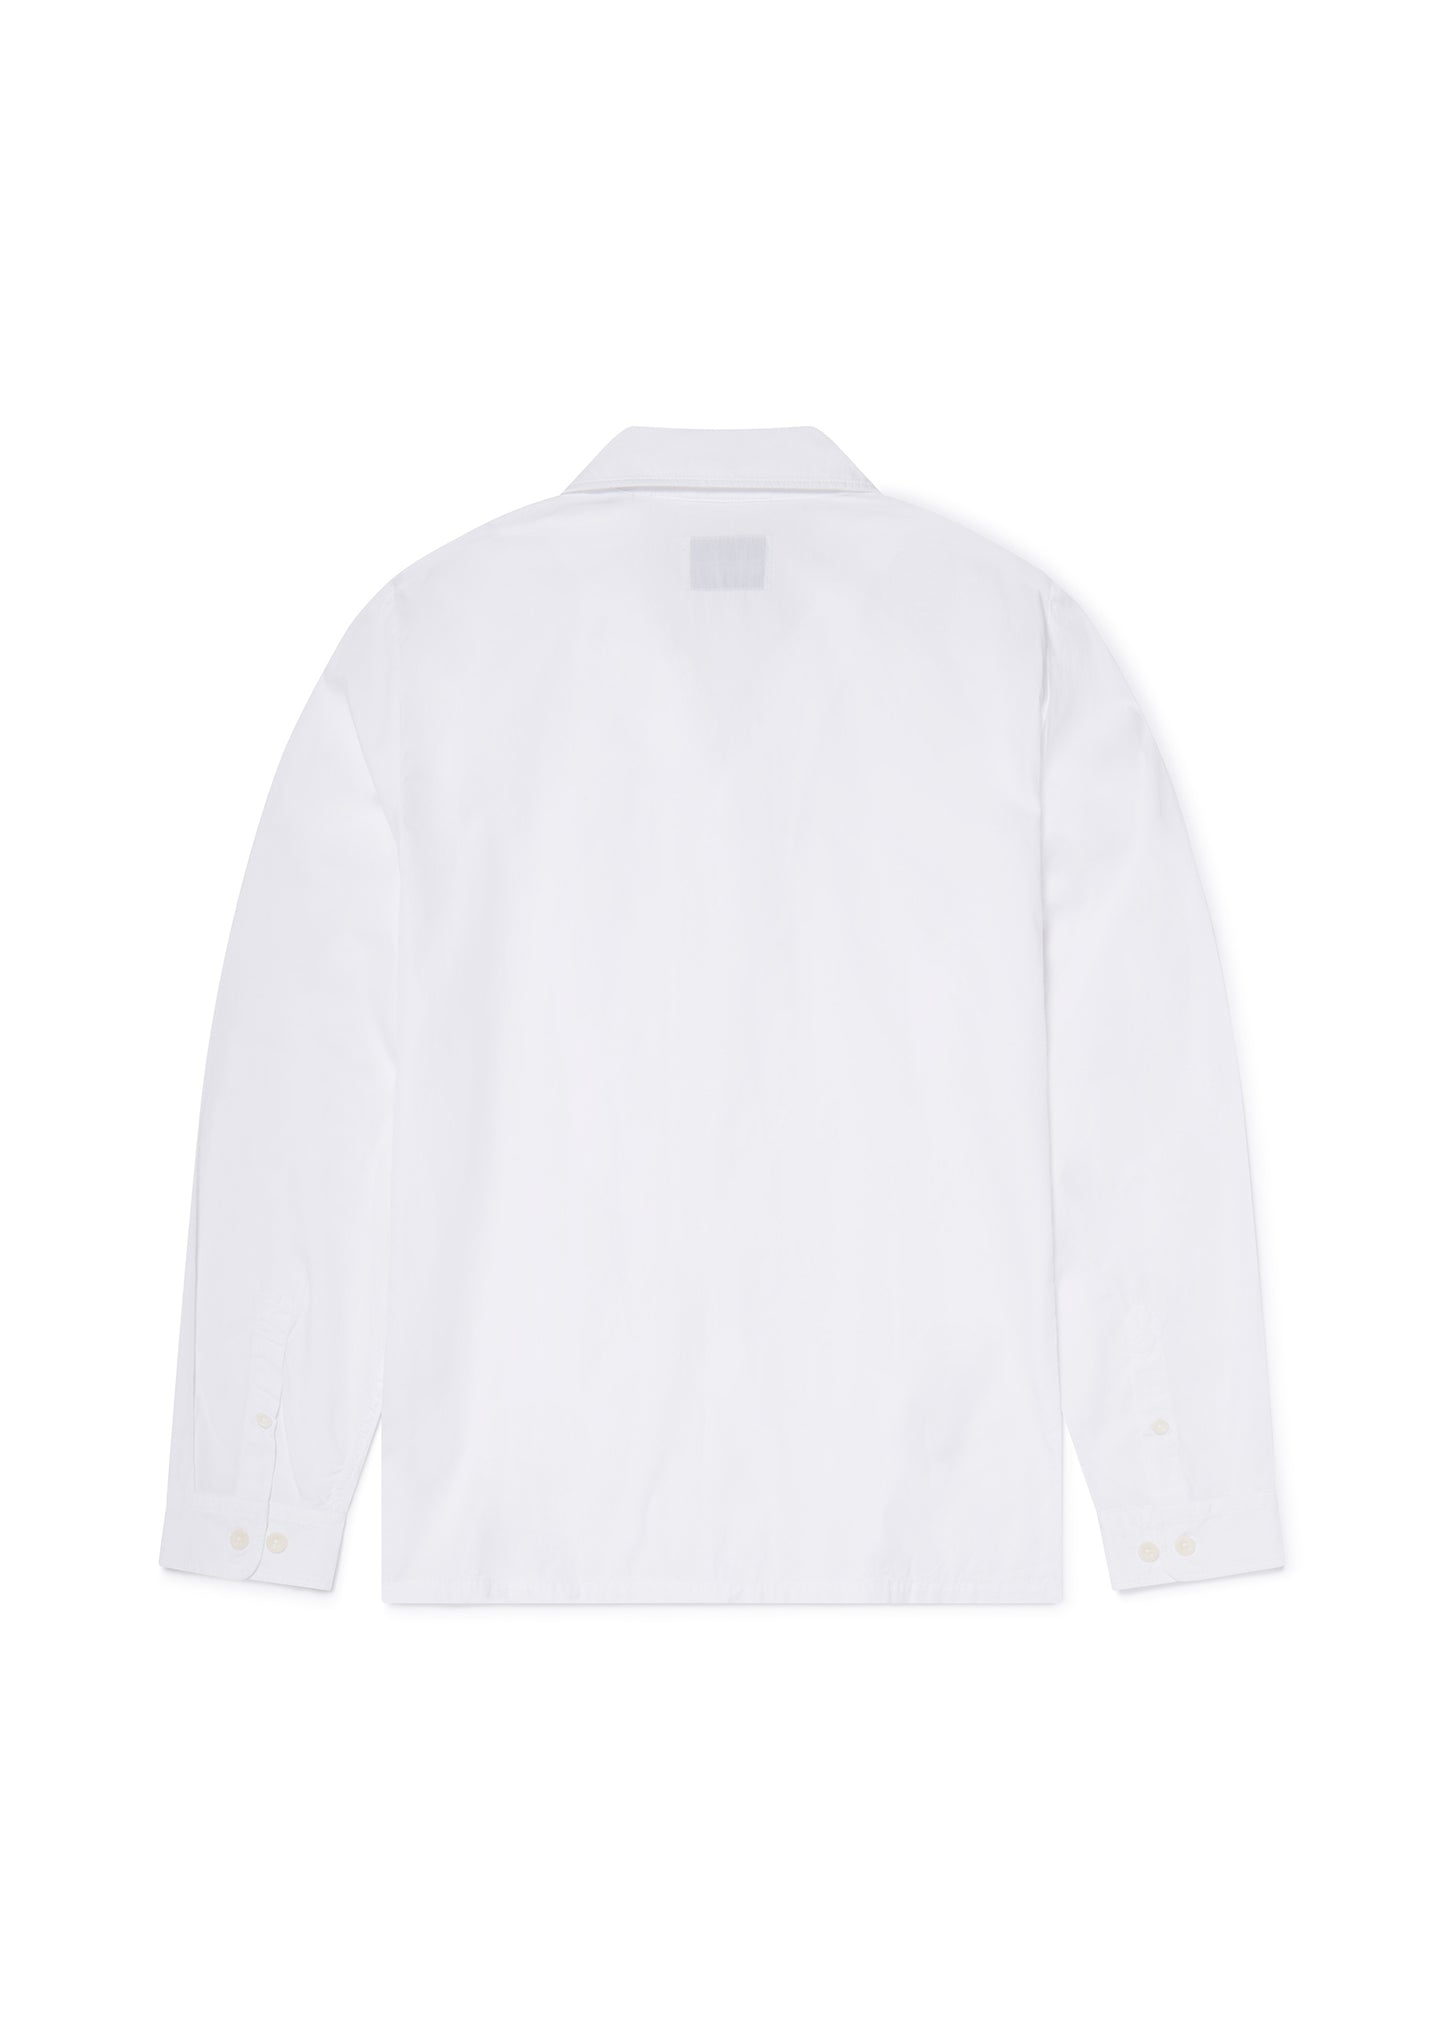 Long Sleeve Revere Poplin Shirt in White